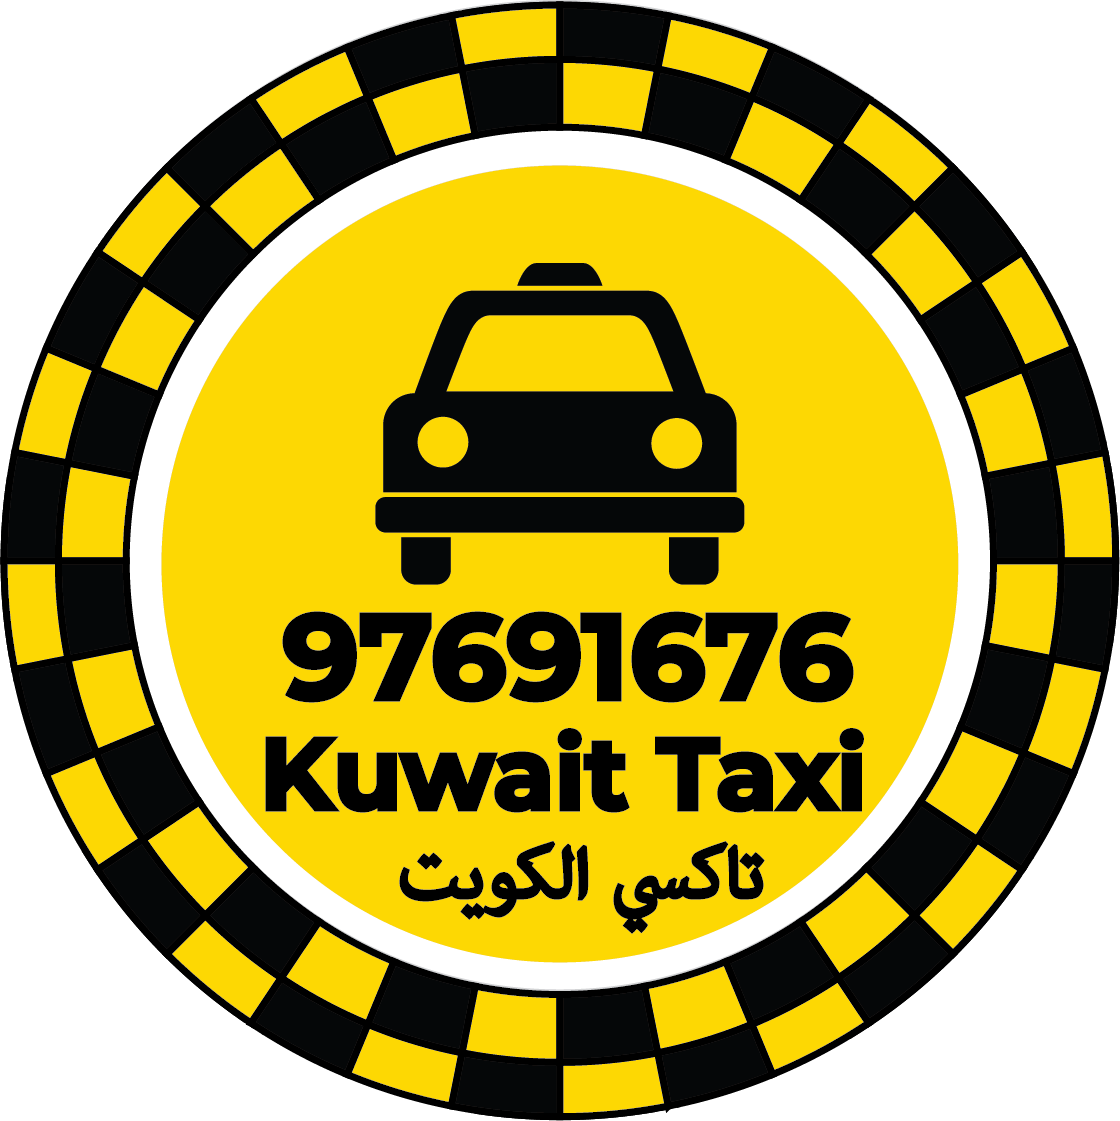 تاكسي قرطبة 97691676 – ارقام تاكسي في قرطبة